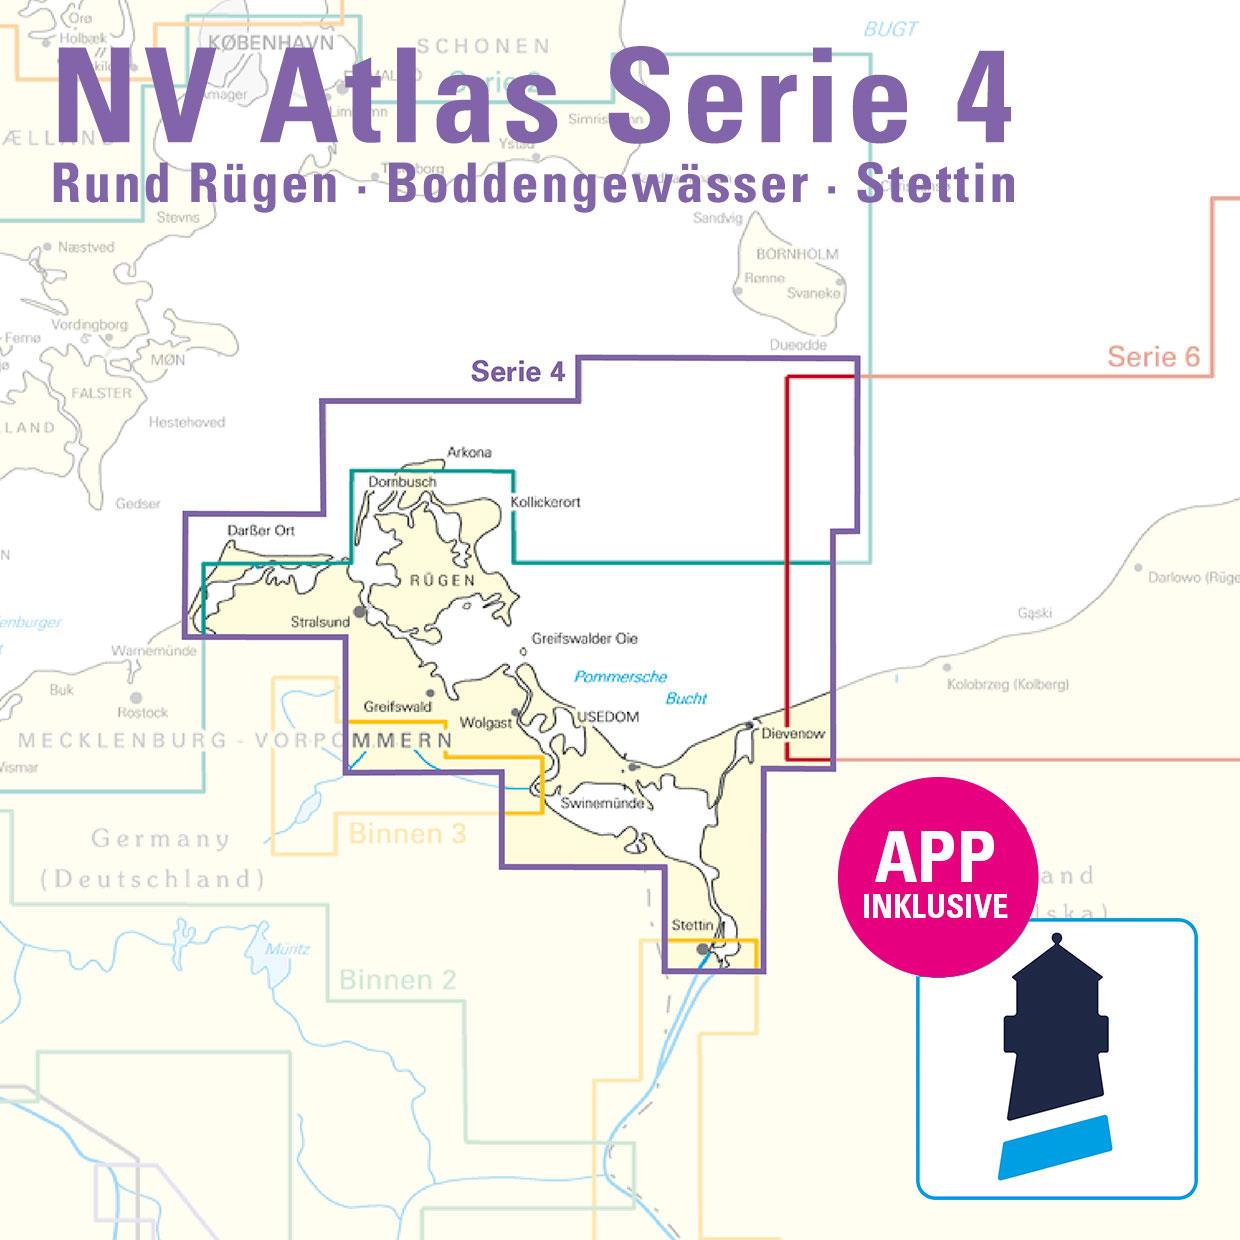 NV Charts Baltic Serie 4 Rund Rügen - Boddengewässer - Stettin